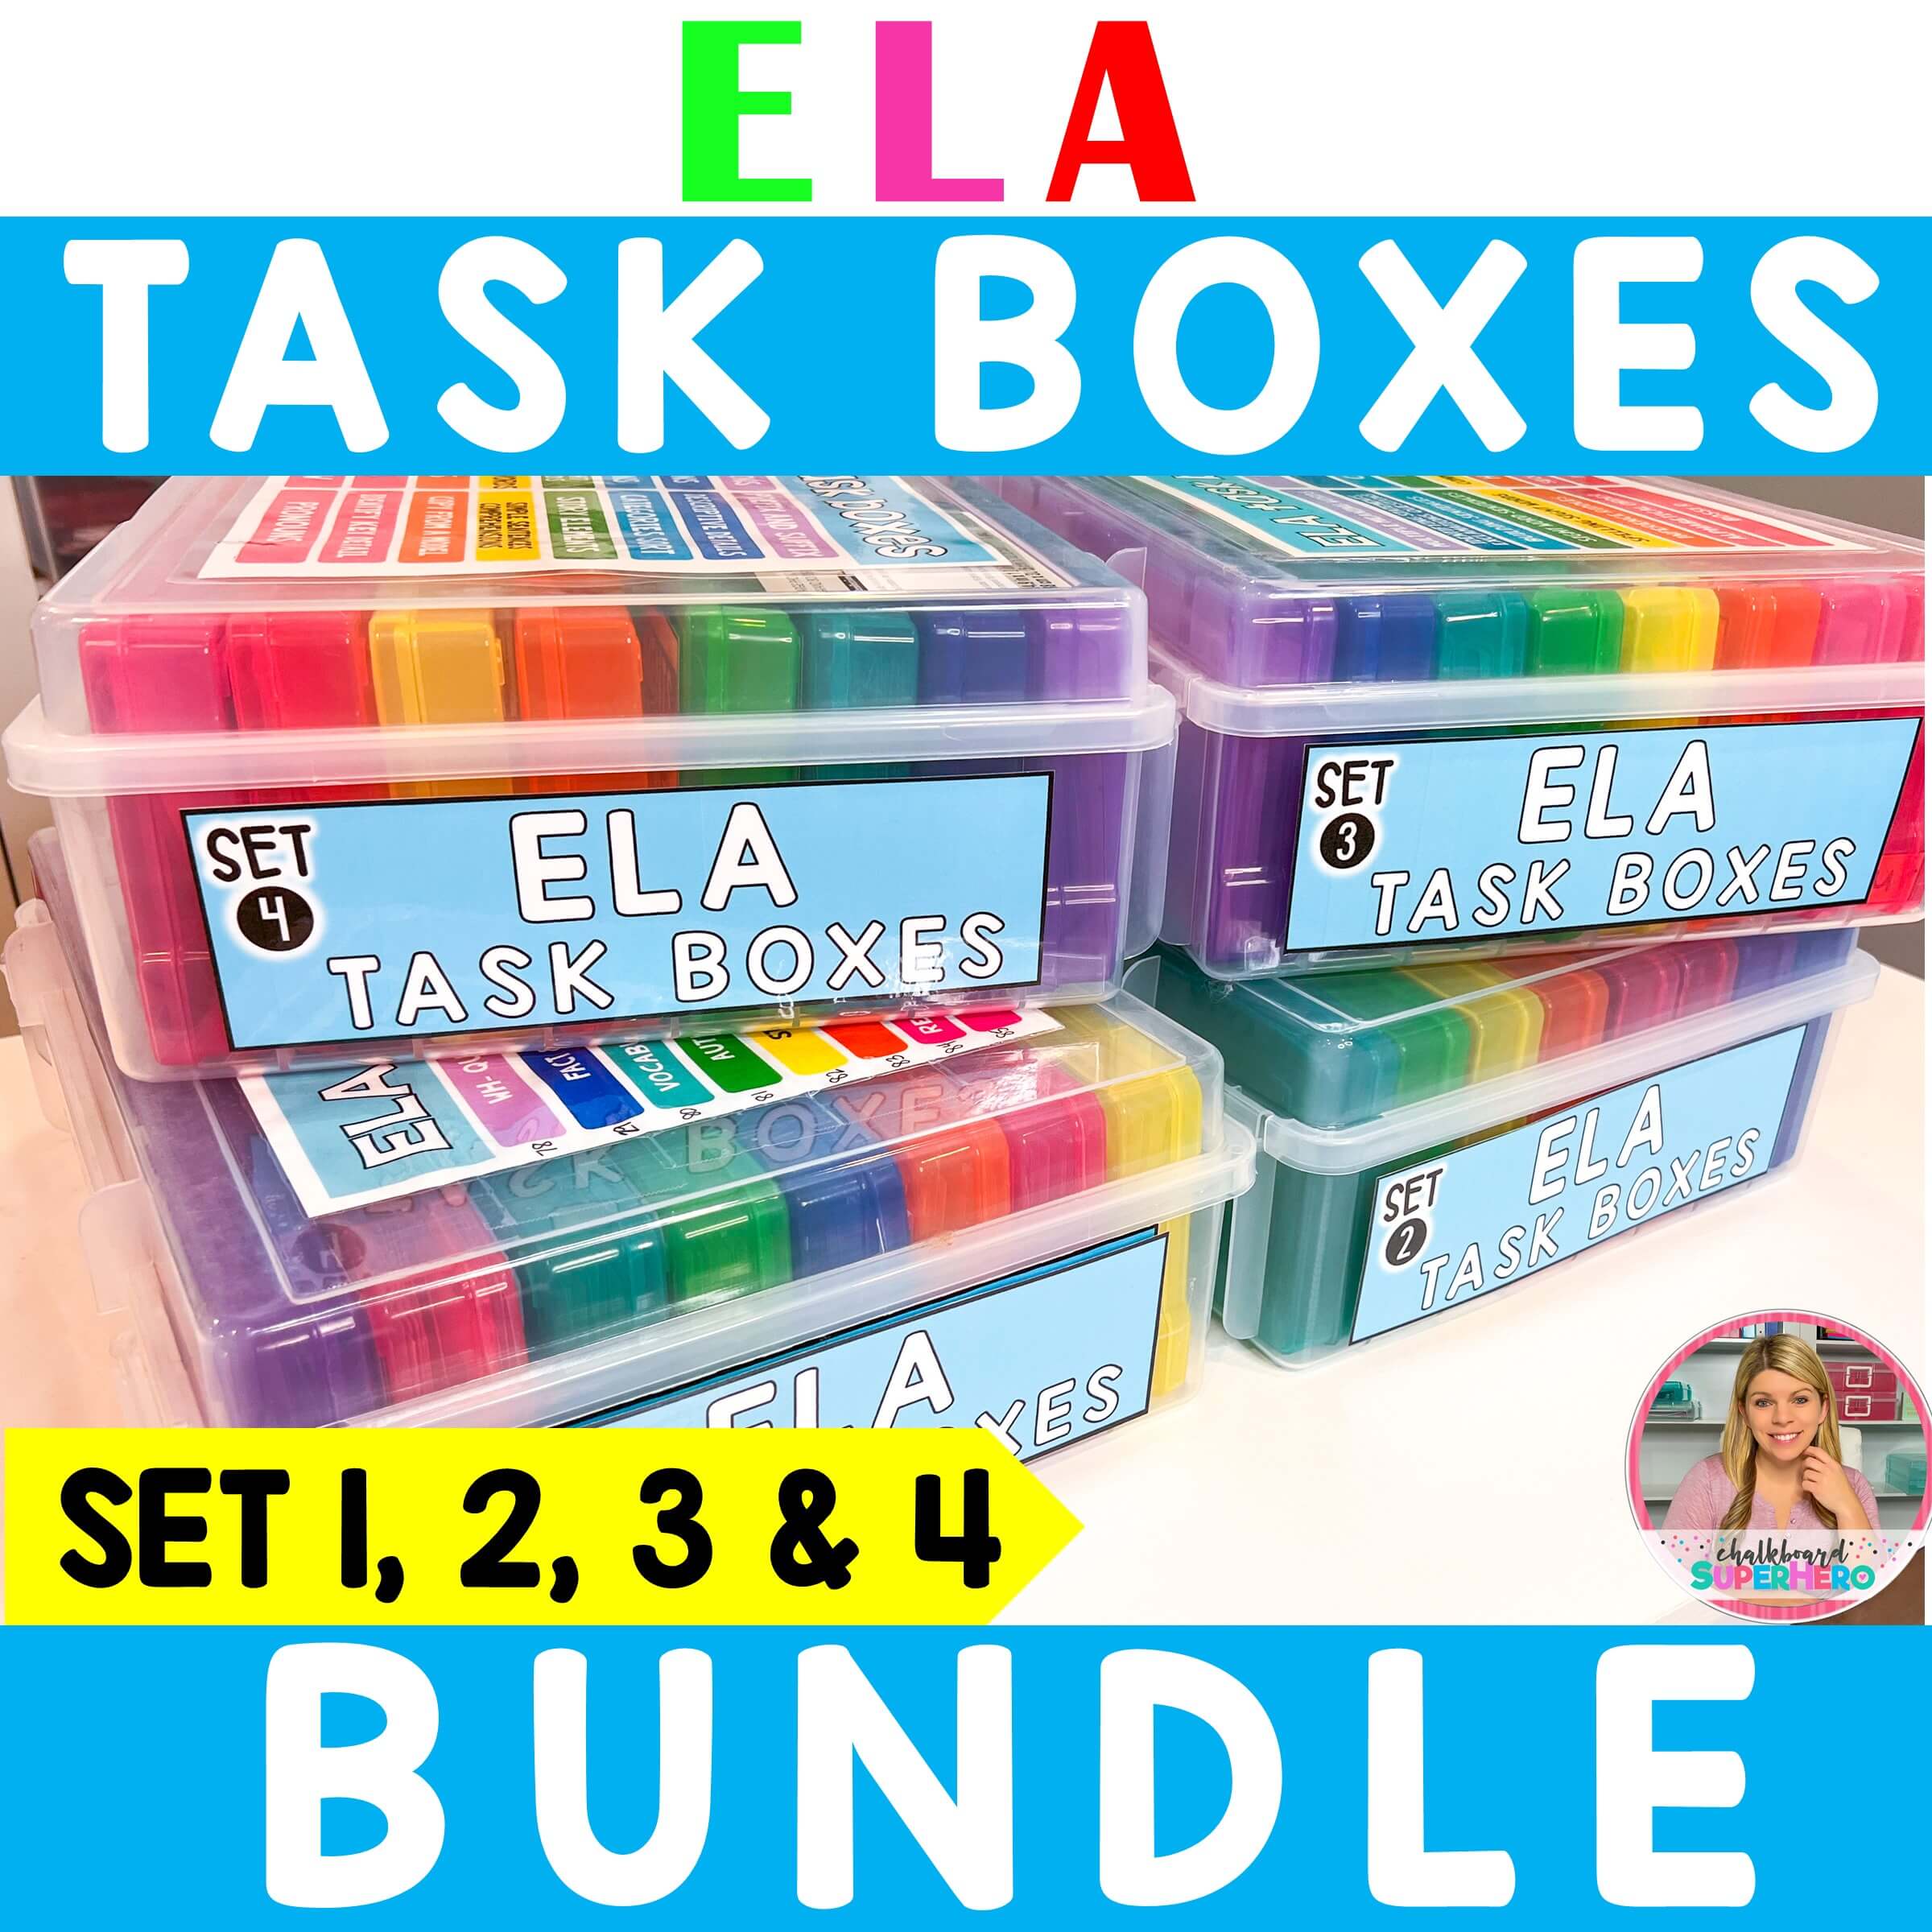 Four Free Task Boxes - Chalkboard Superhero